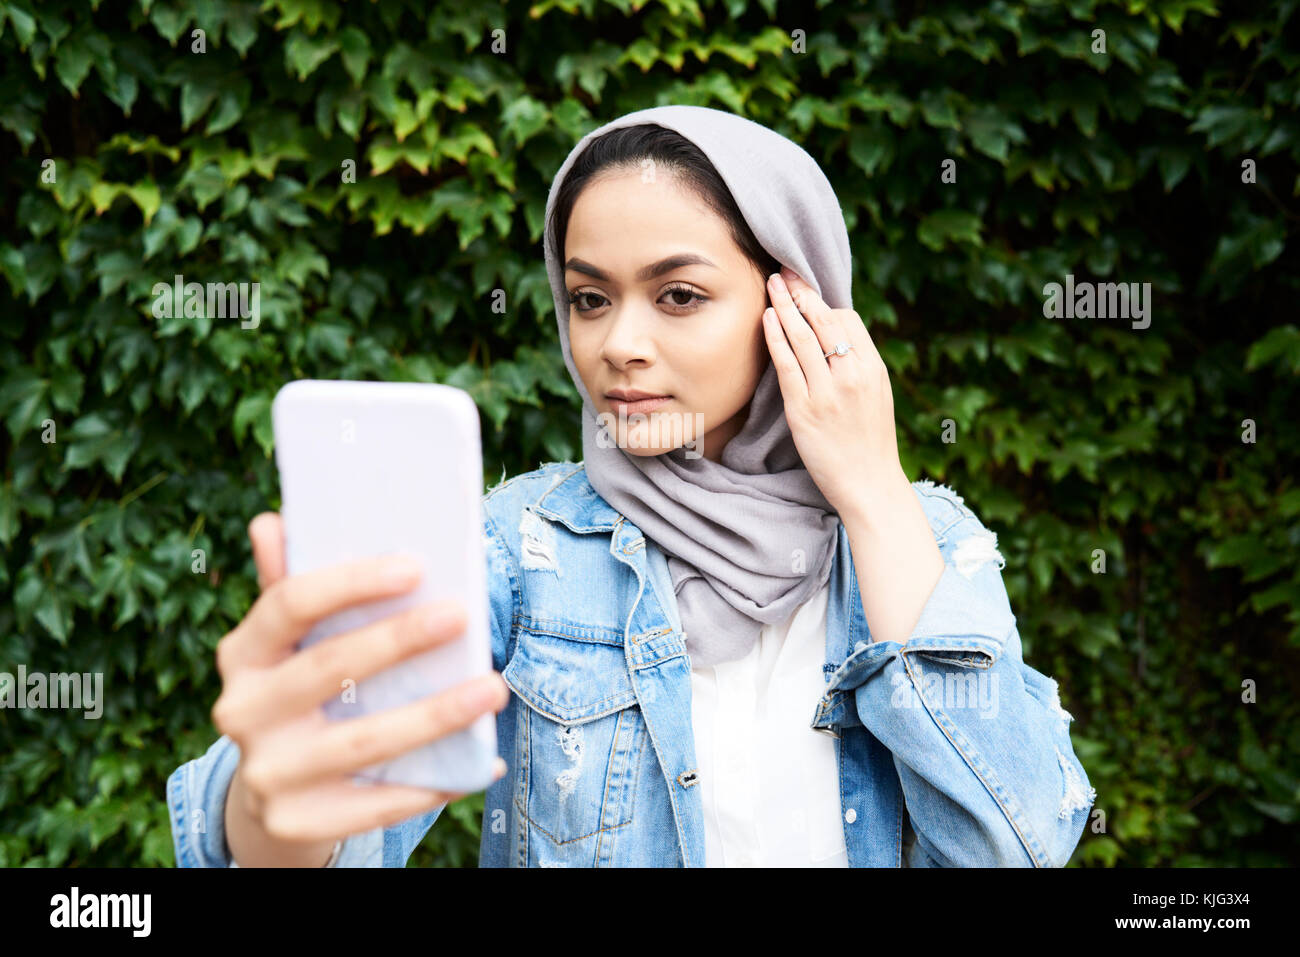 Londres, Reino Unido, Inglaterra, joven hermosa chica musulmana mirando su teléfono de pantalla usar el hiyab sea contra la pared verde, estudiante de la universidad musulmana Foto de stock